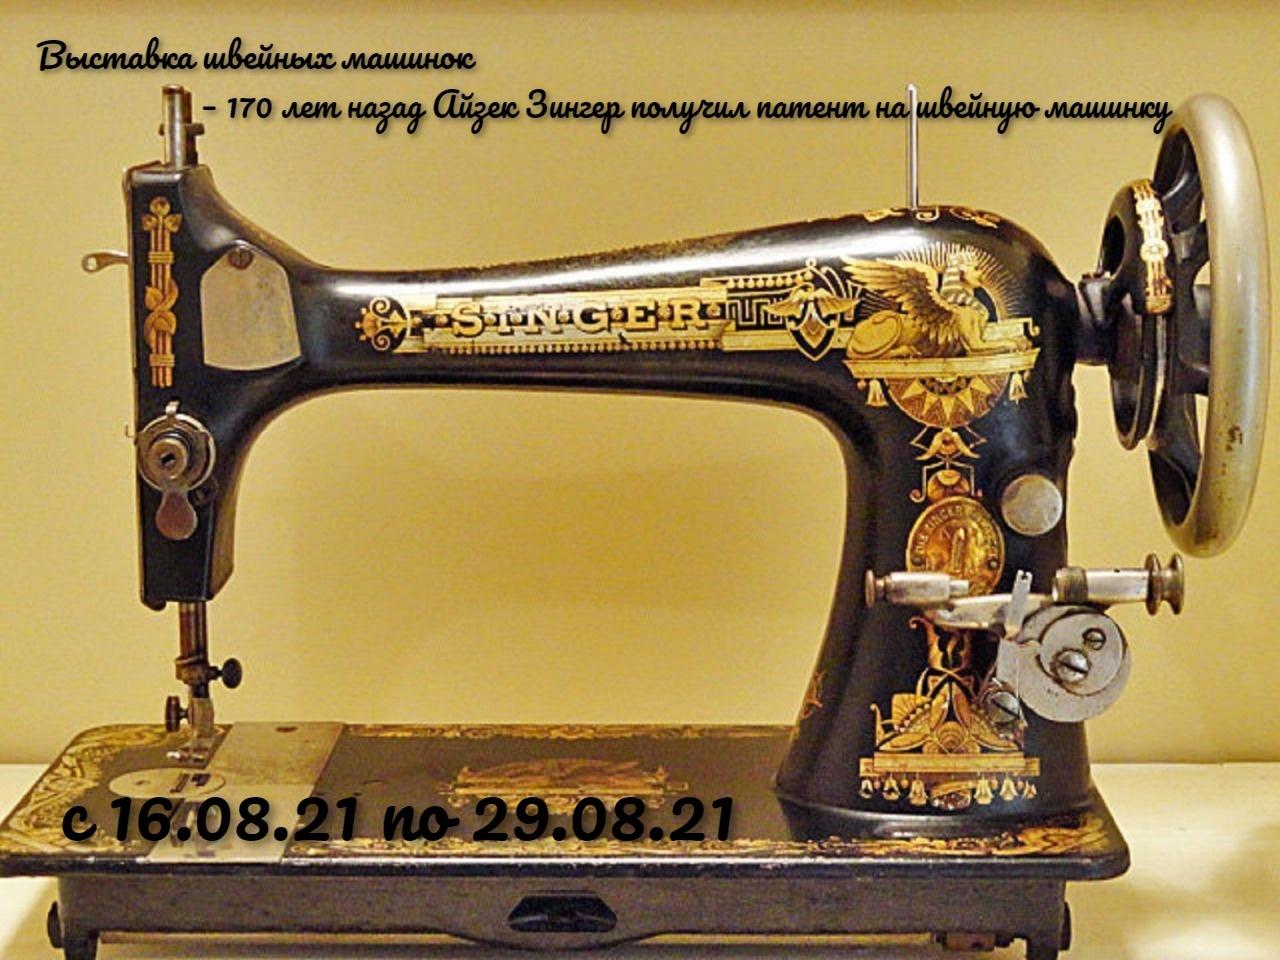 Швейная машинка 394. Швейная машинка Зингера 1841. Швейная машинка Зингер а867968. Швейная машинка Зингер s010l. Zinger швейная машинка а3535836.